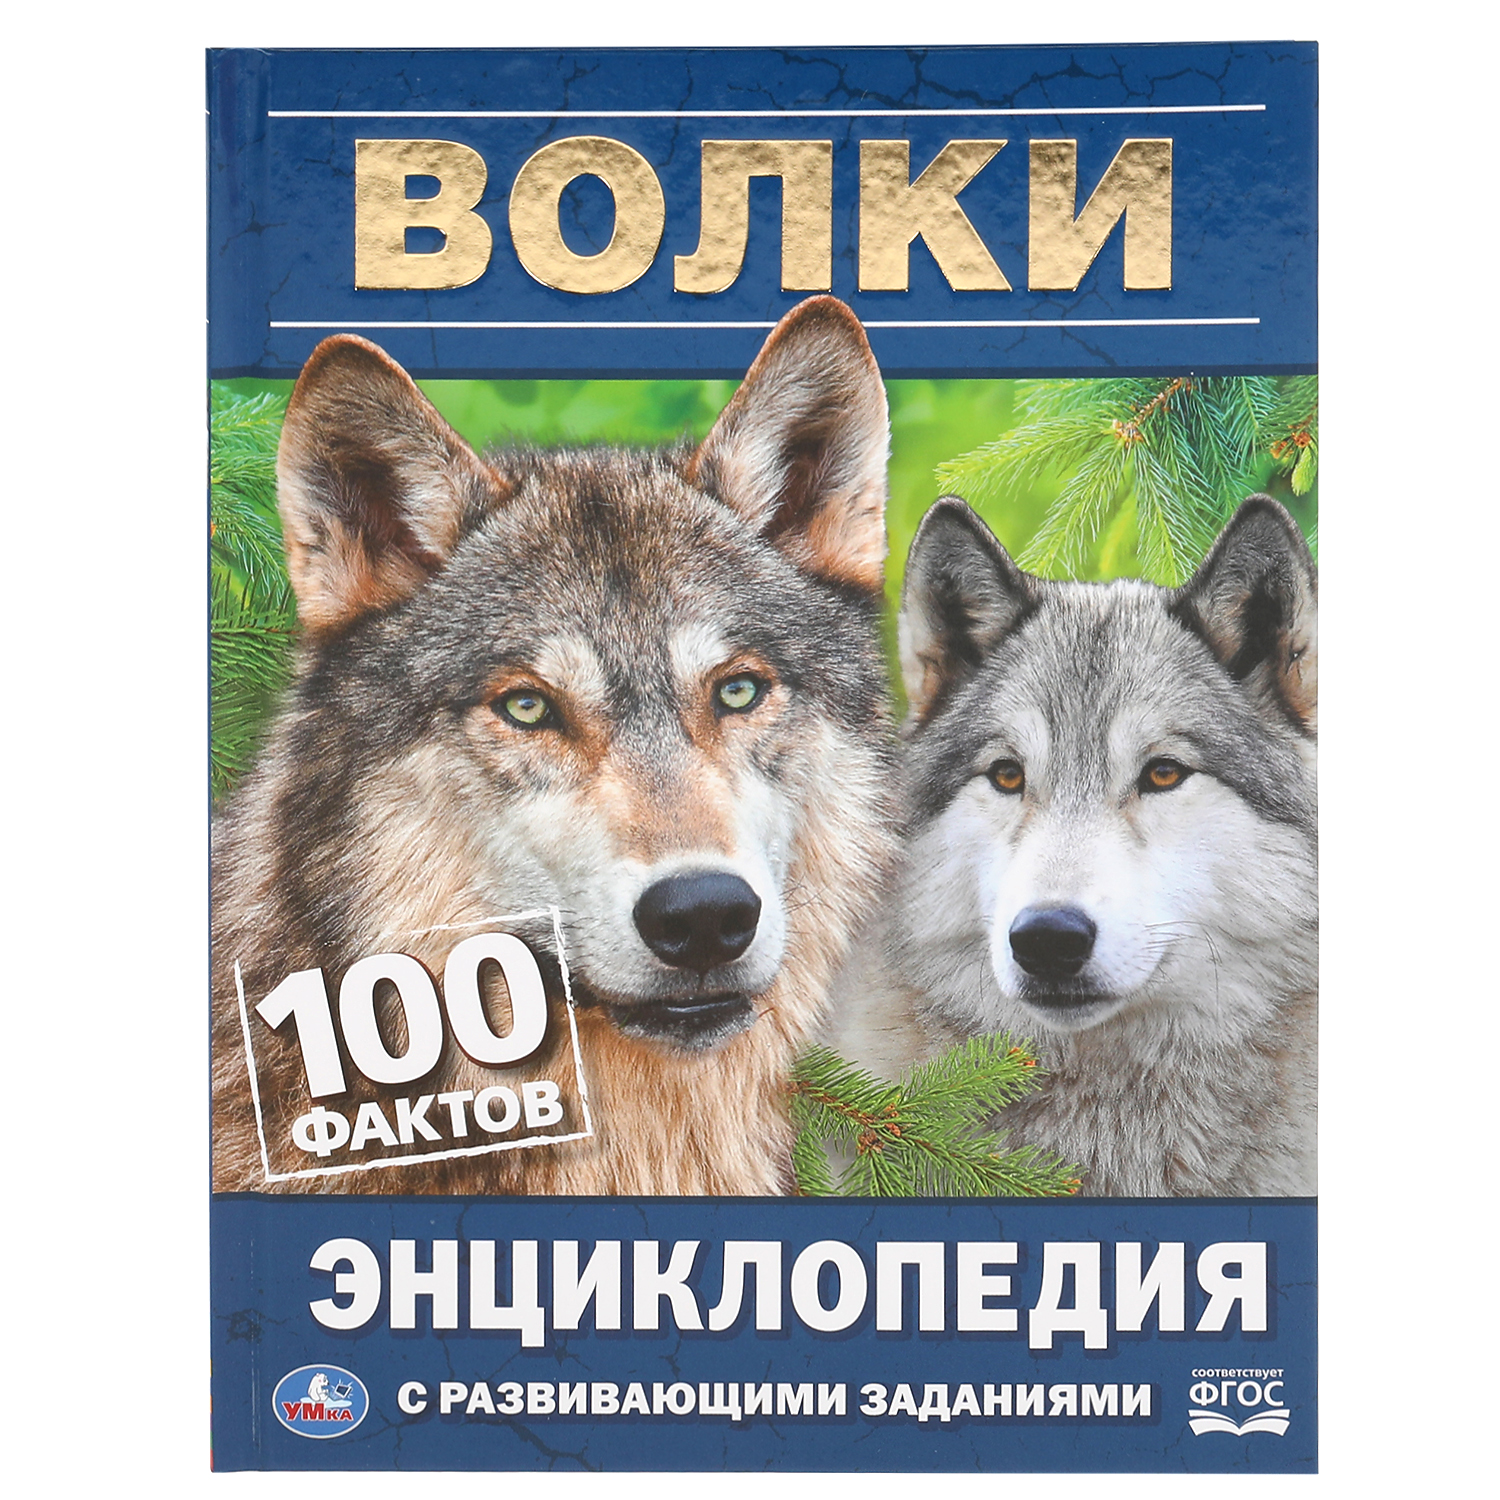 Книга УМка Волки. 100 фактов - фото 1